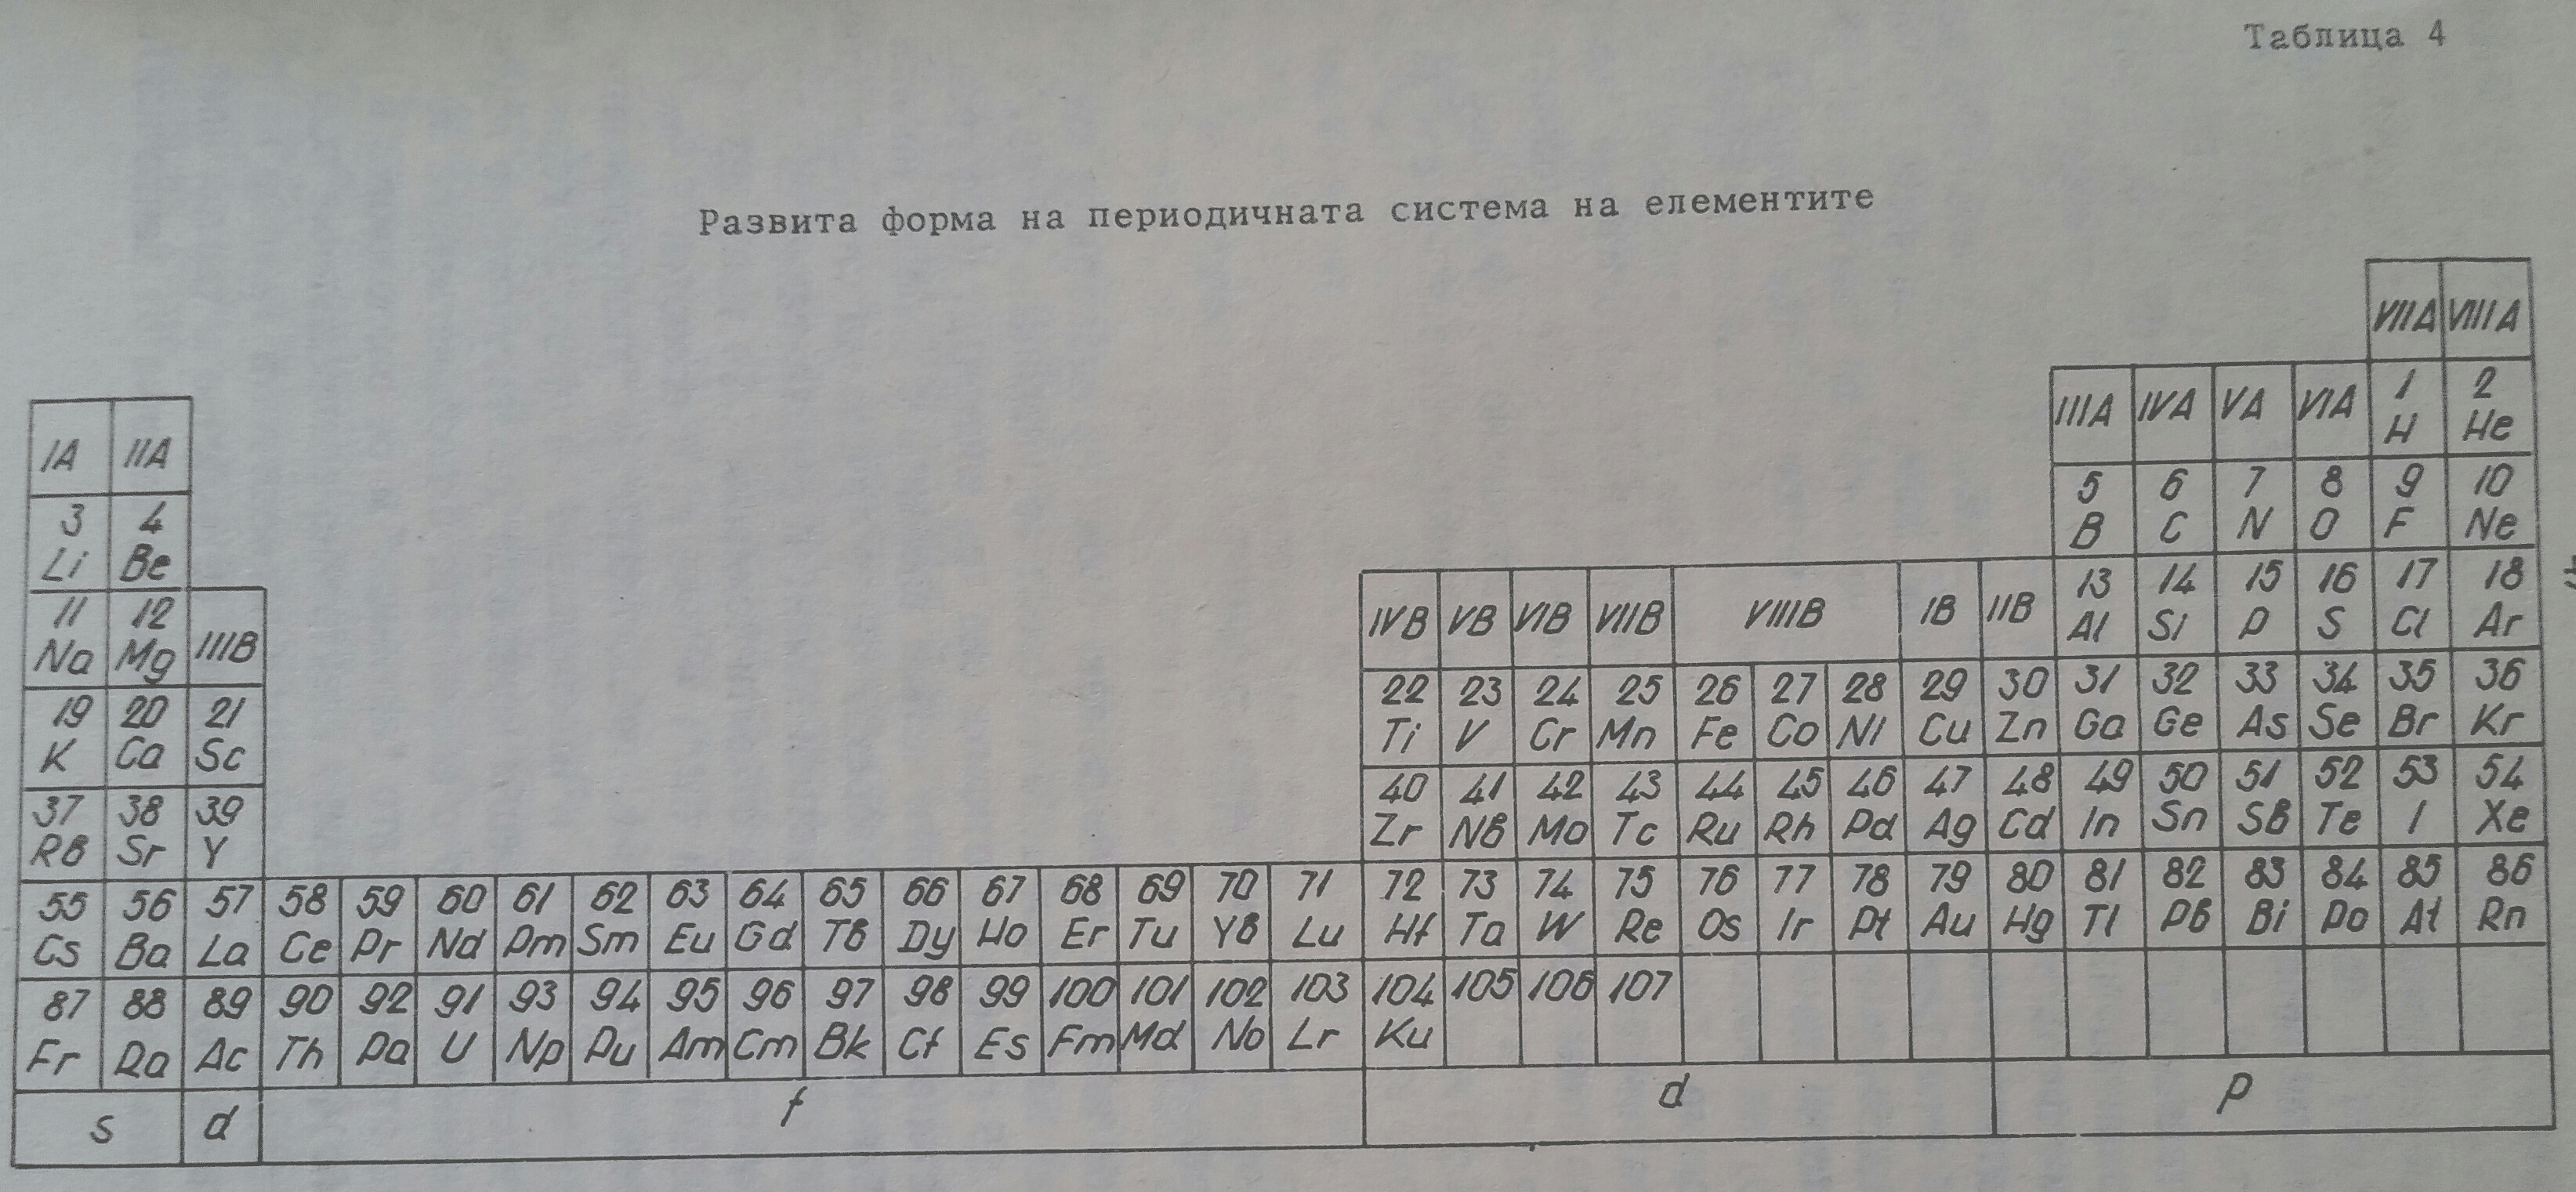 Tabl 4 Periodic